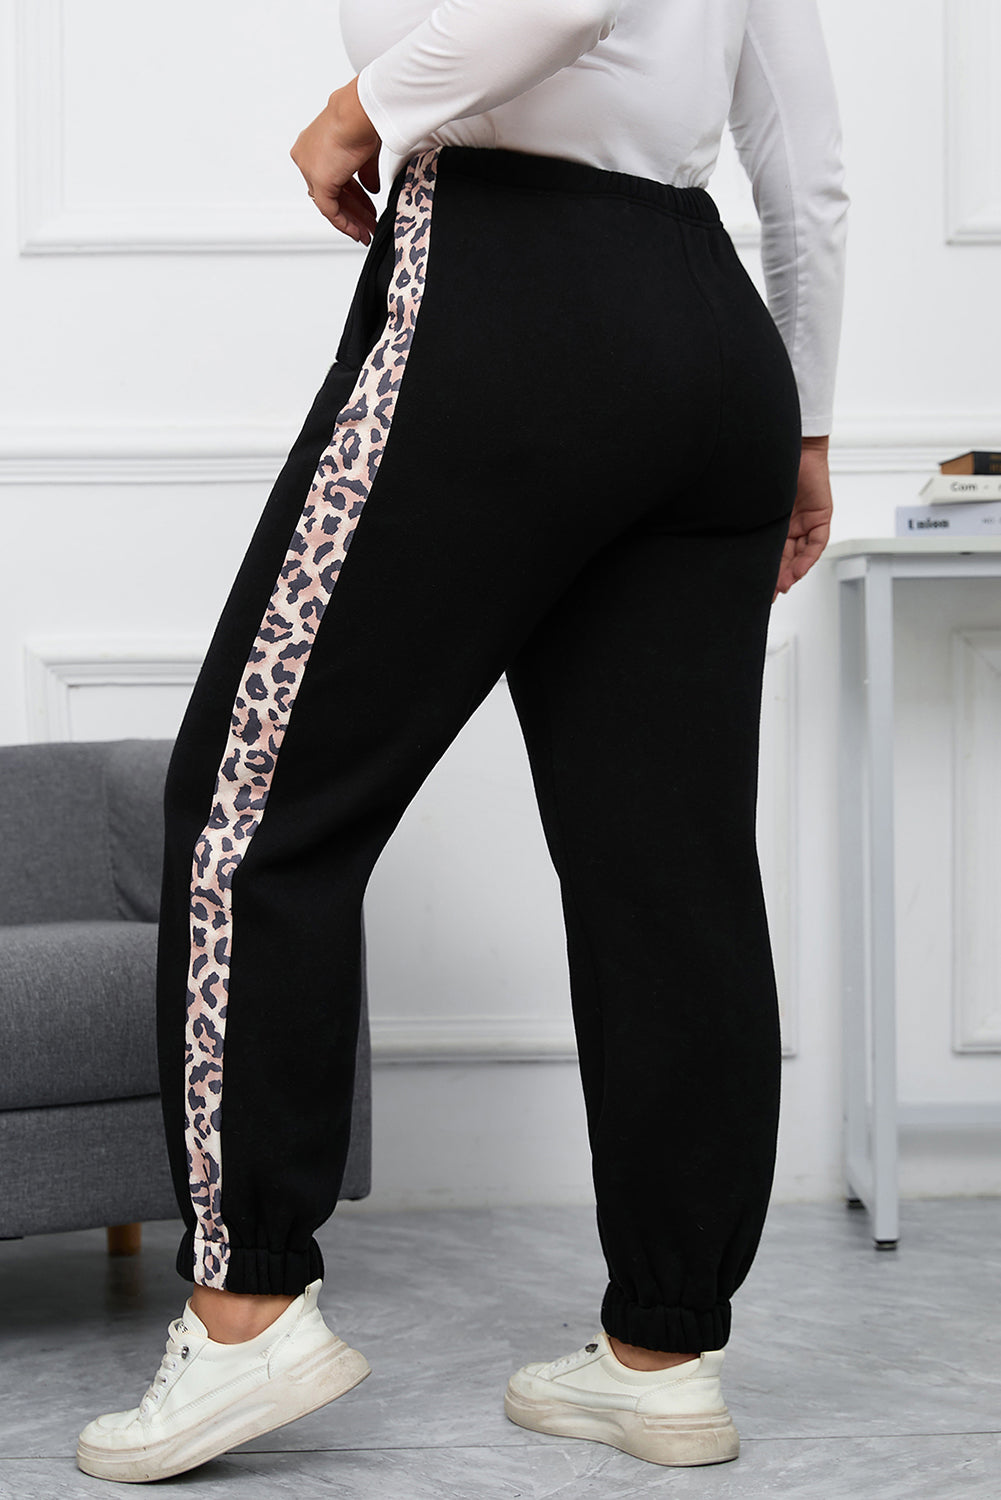 Črne tekaške hlače velike velikosti s kontrastnim leopardjim stranskim delom